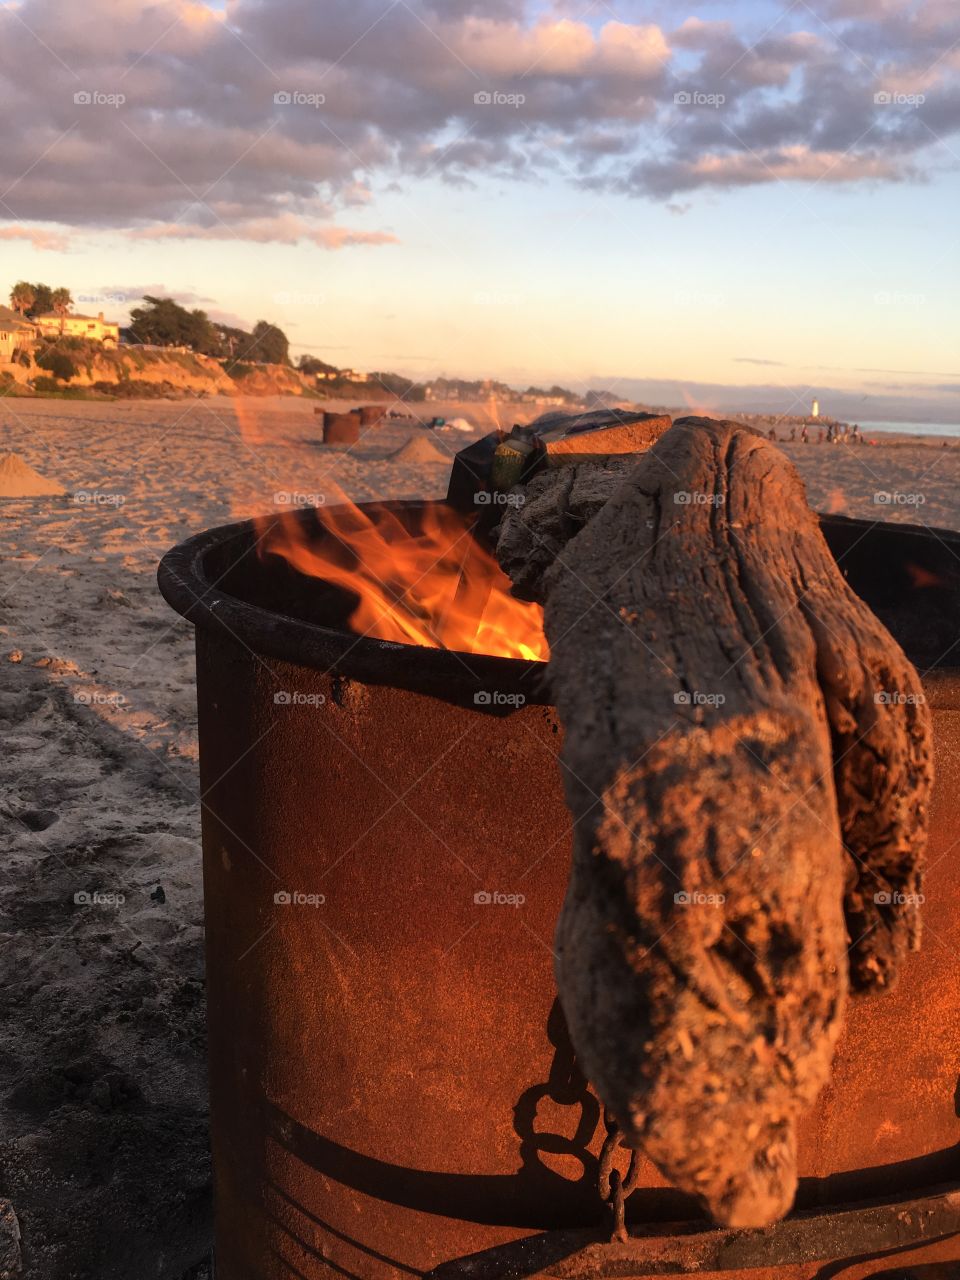 Bonfire at Seabright beach in Santa Cruz